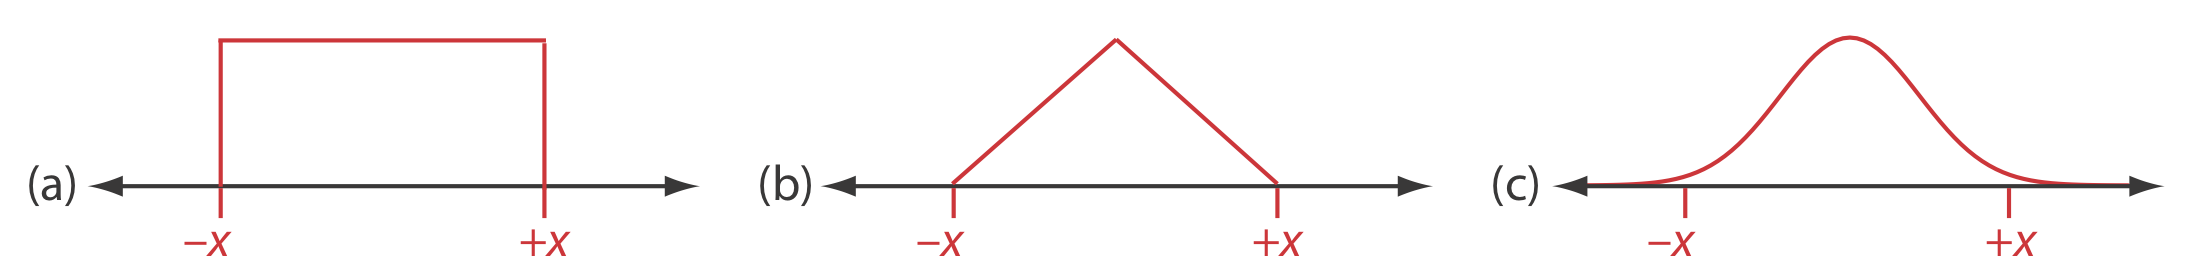 La distribución uniforme muestra un rectángulo de valores de -x a +x con altura constante y puntos finales nítidos. La distribución triangular tiene aumento lineal a un pico central y disminución lineal después del pico. La distribución normal sigue una curva de campana.